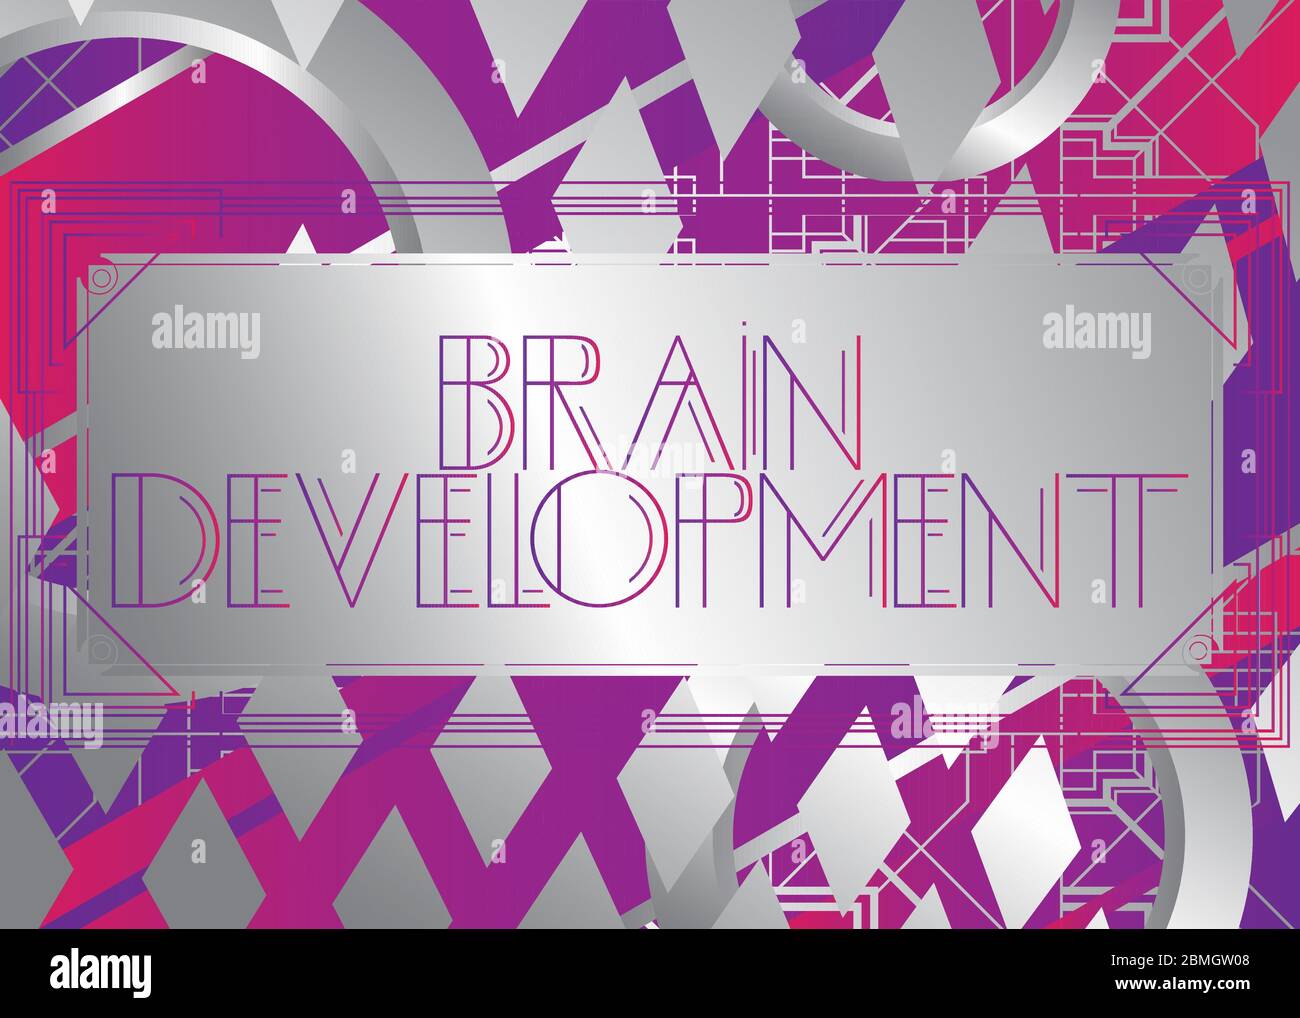 Art Deco Brain Development Text. Dekorative Grußkarte, Schild mit Vintage-Buchstaben. Stock Vektor